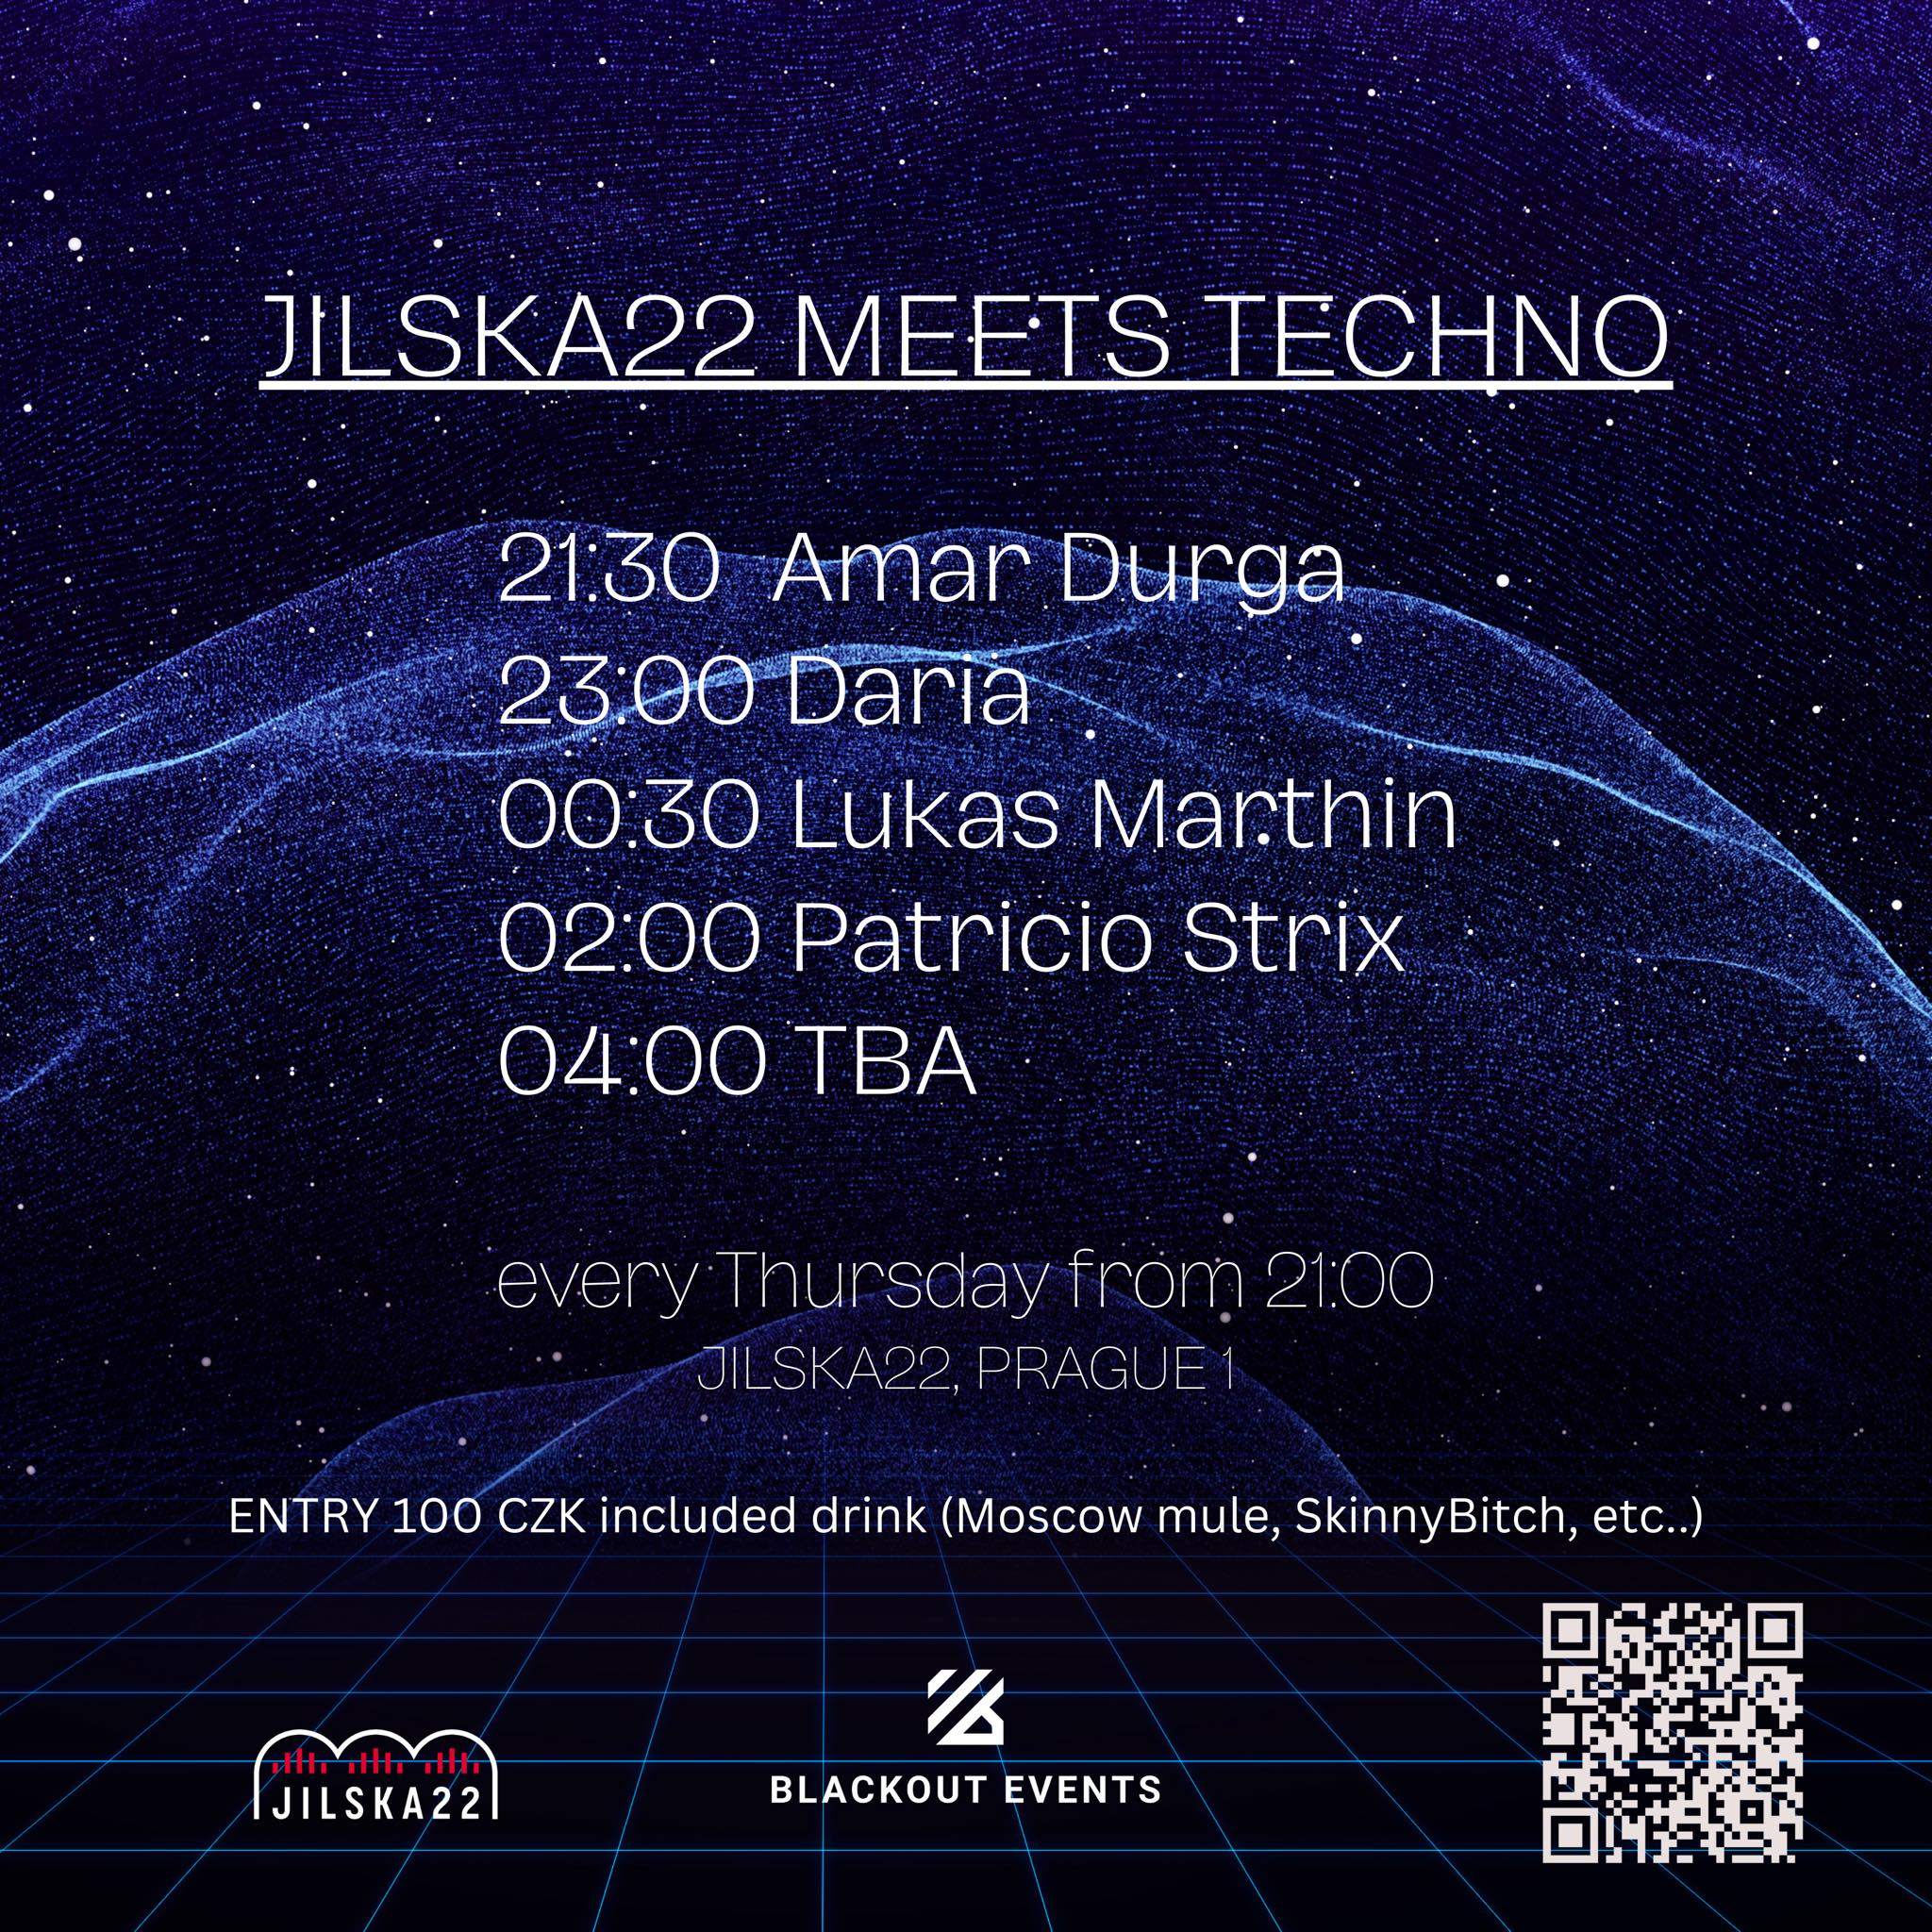 Jilska 22 meets Techno by Blackout - Página trasera